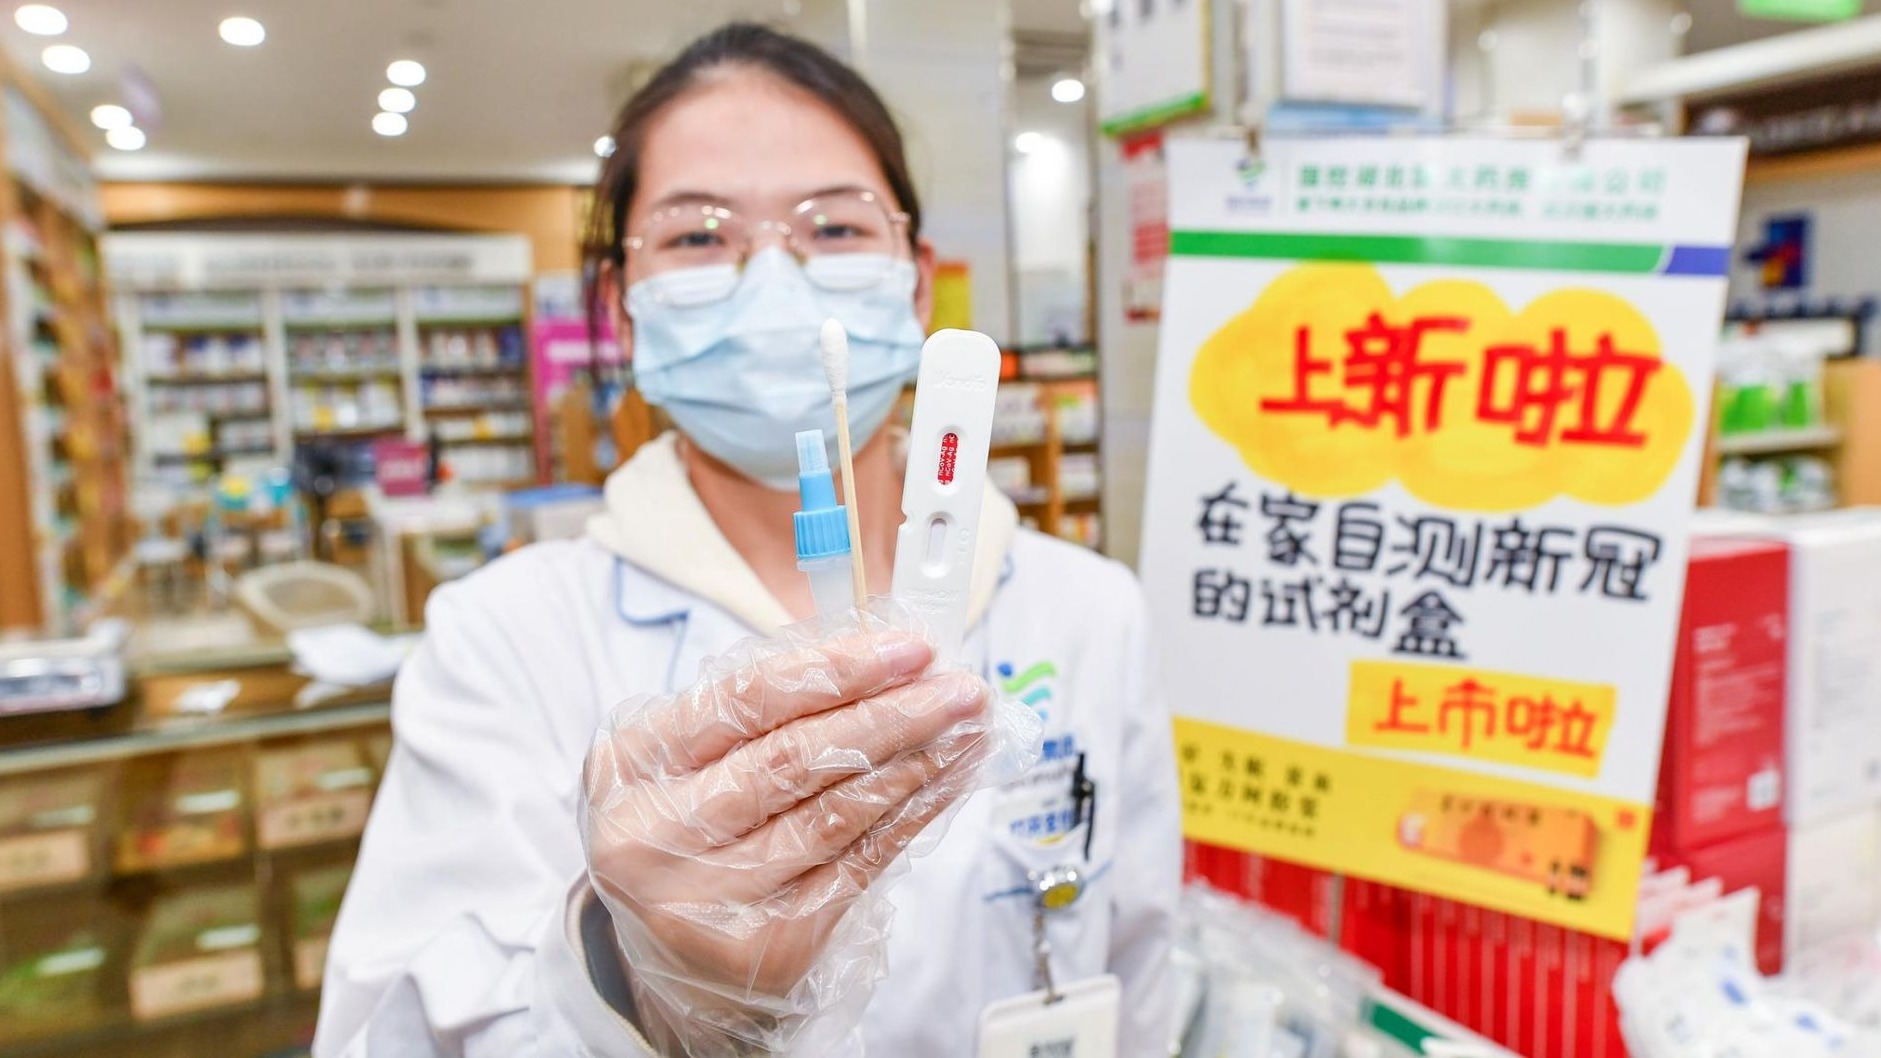 武漢藥店開售新冠抗原自測試劑盒